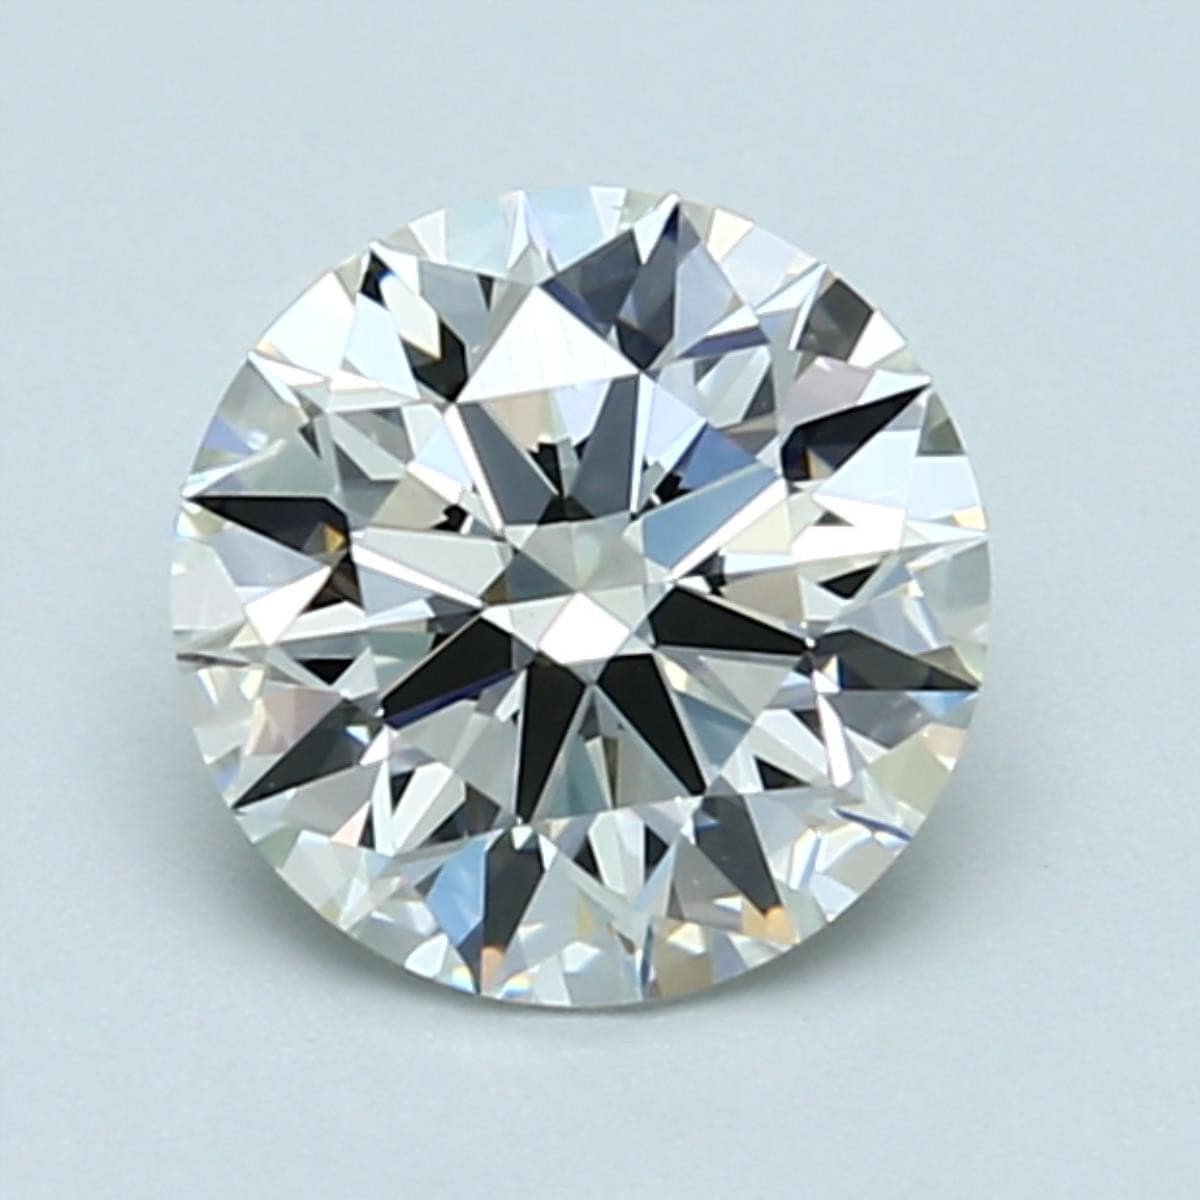 1.5 carat J color diamond with faint fluorescence